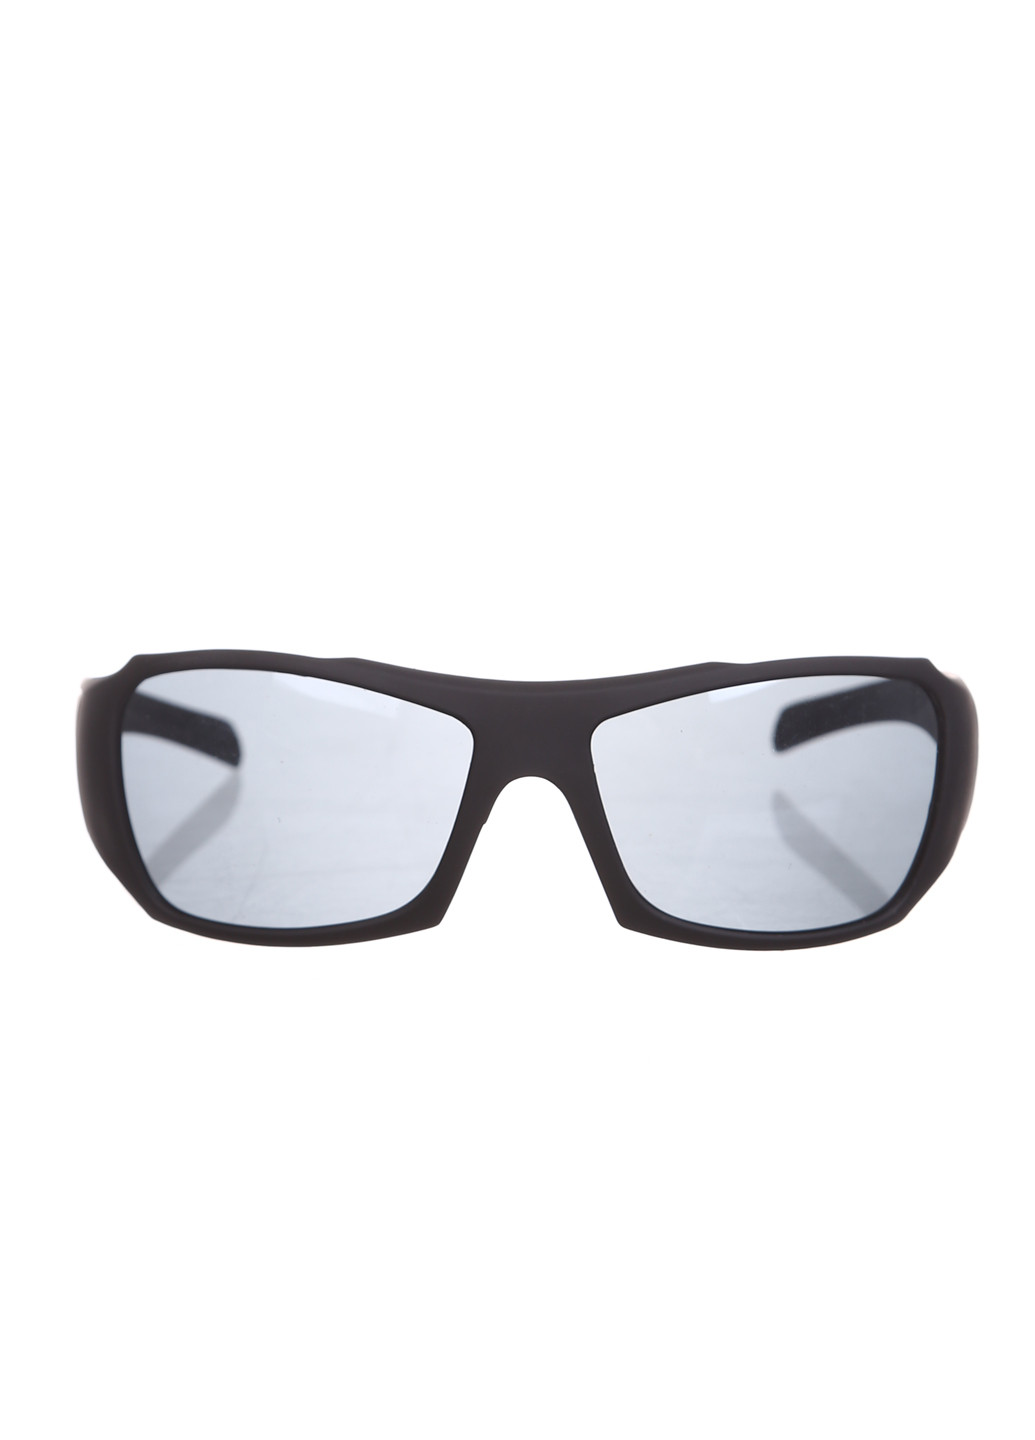 Солнцезащитные очки Sofitel чёрные